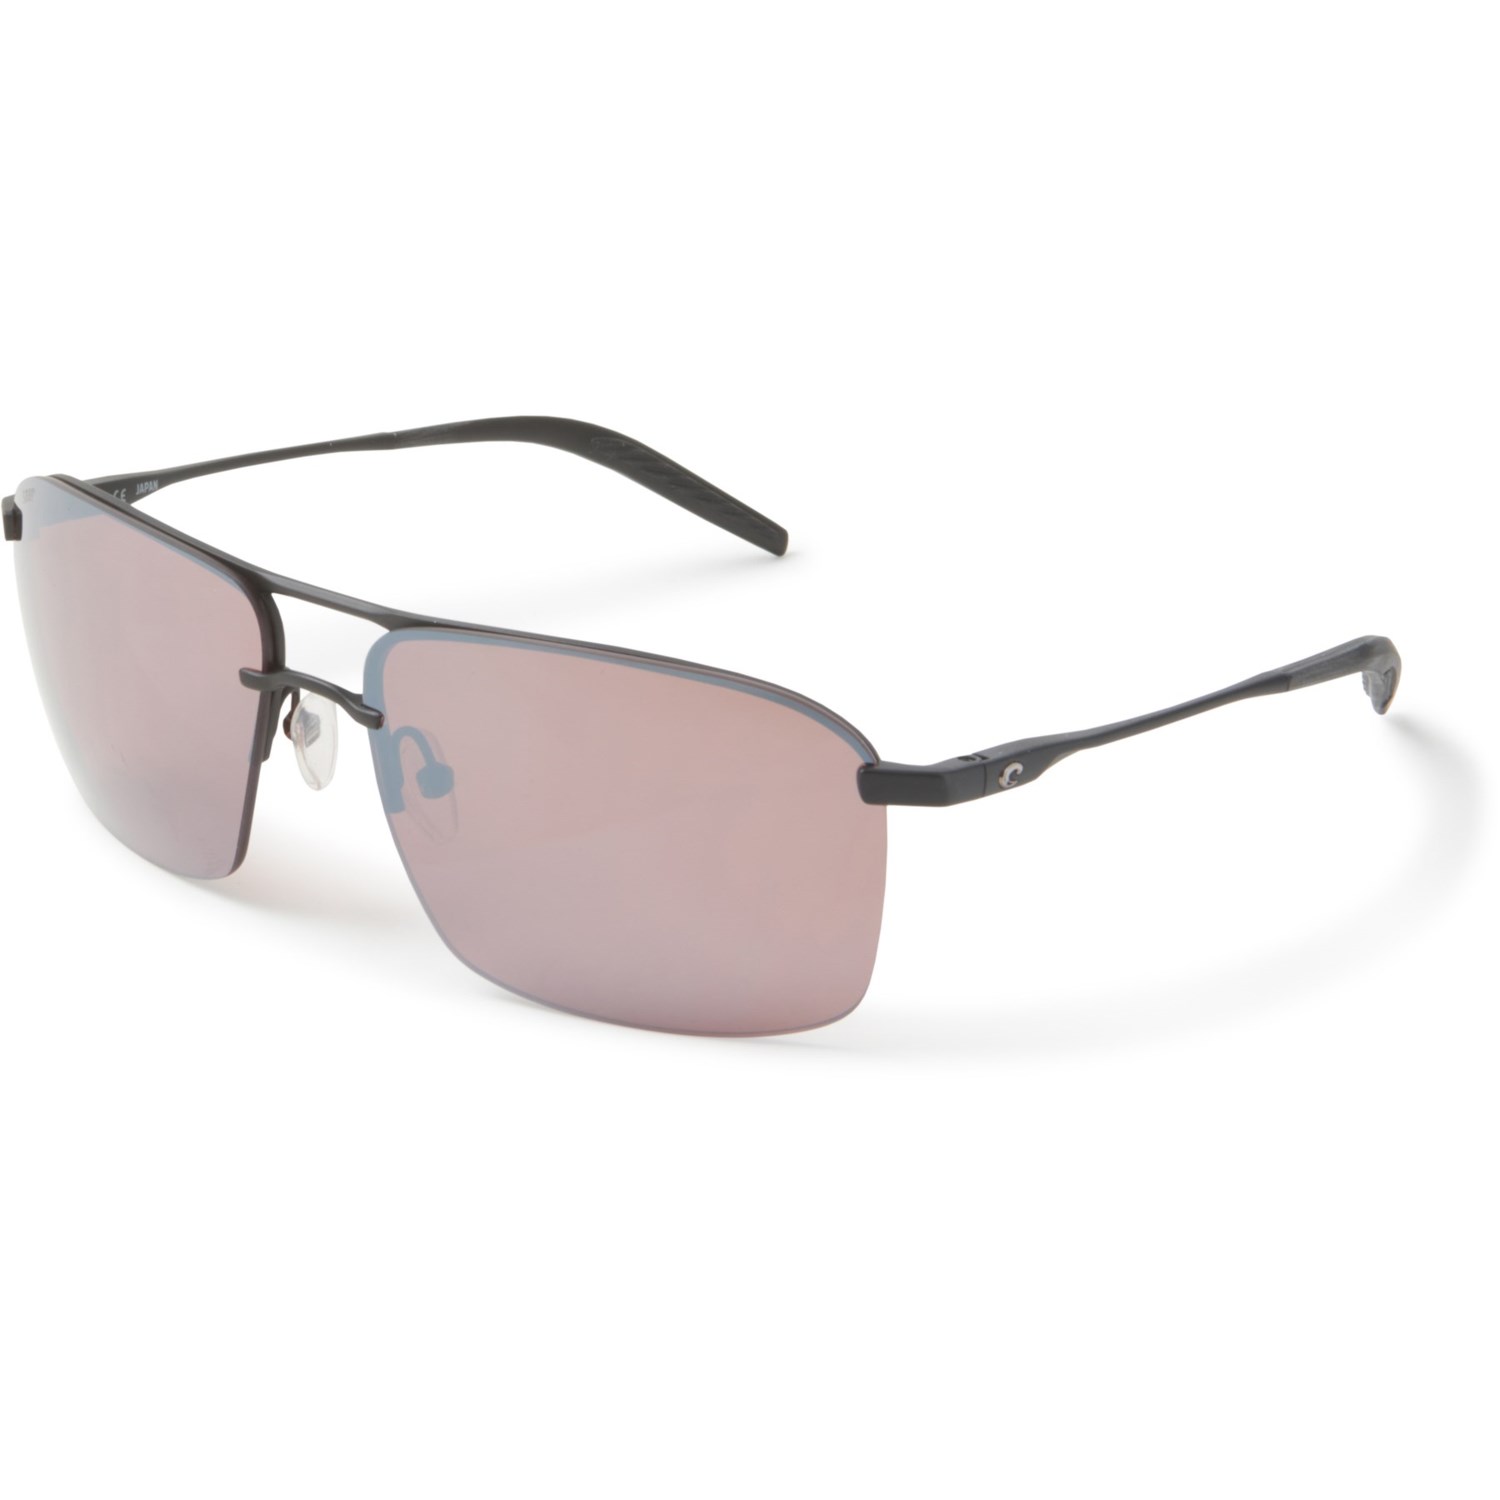 Costa Skimmer Titanium Sunglasses (For Men) - Save 58%